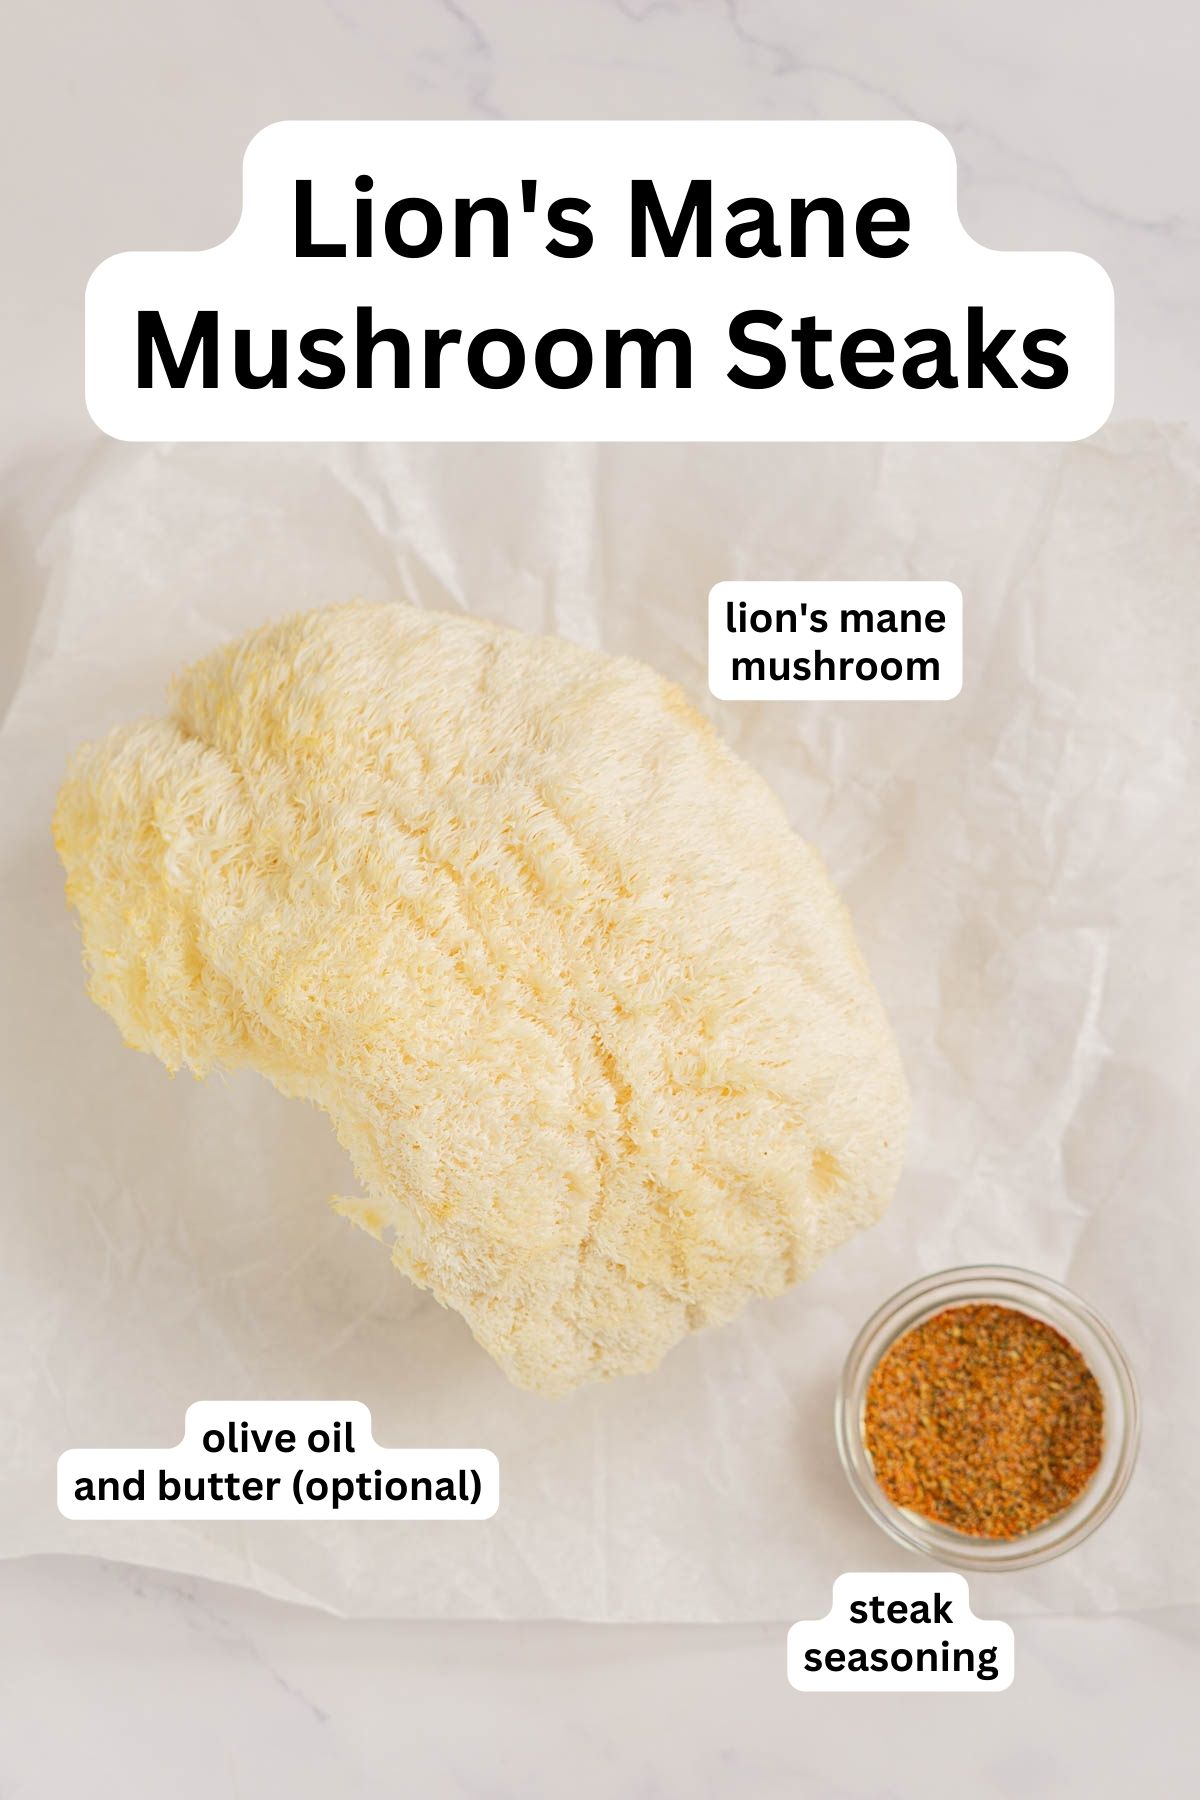 Ingredients to make lion's mane mushroom steaks